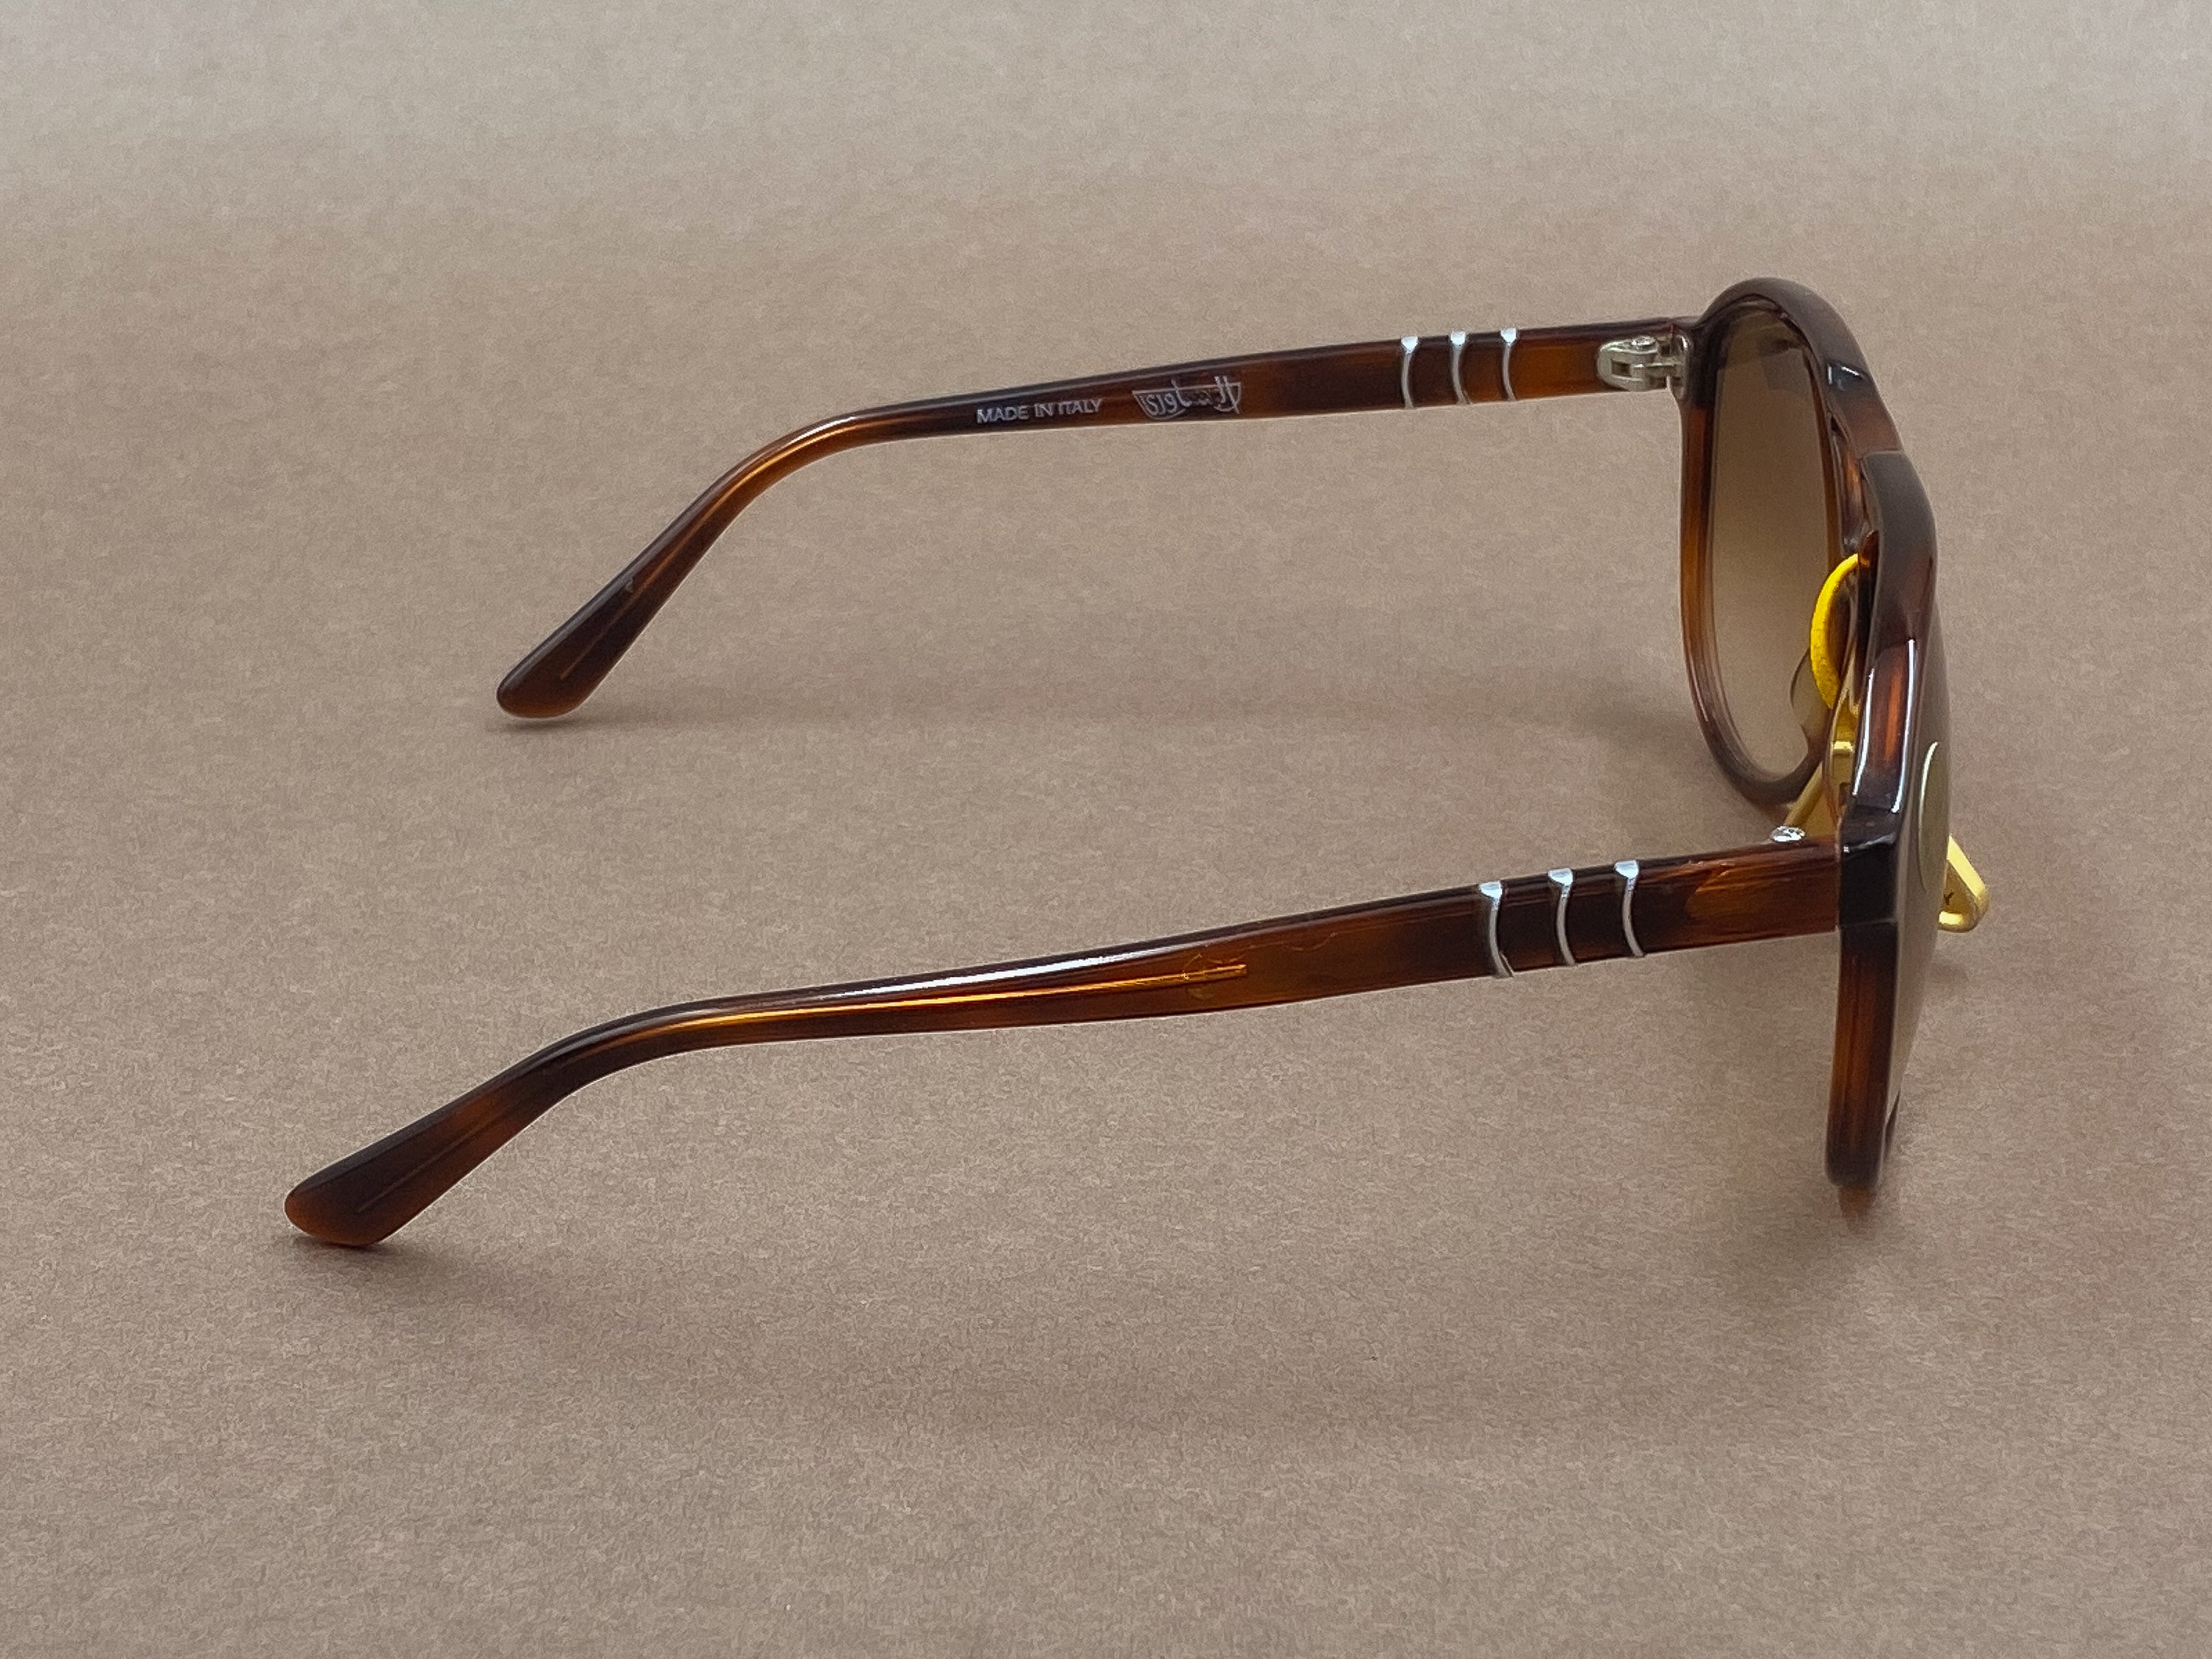 Persol Ratti 58202/56T sunglasses